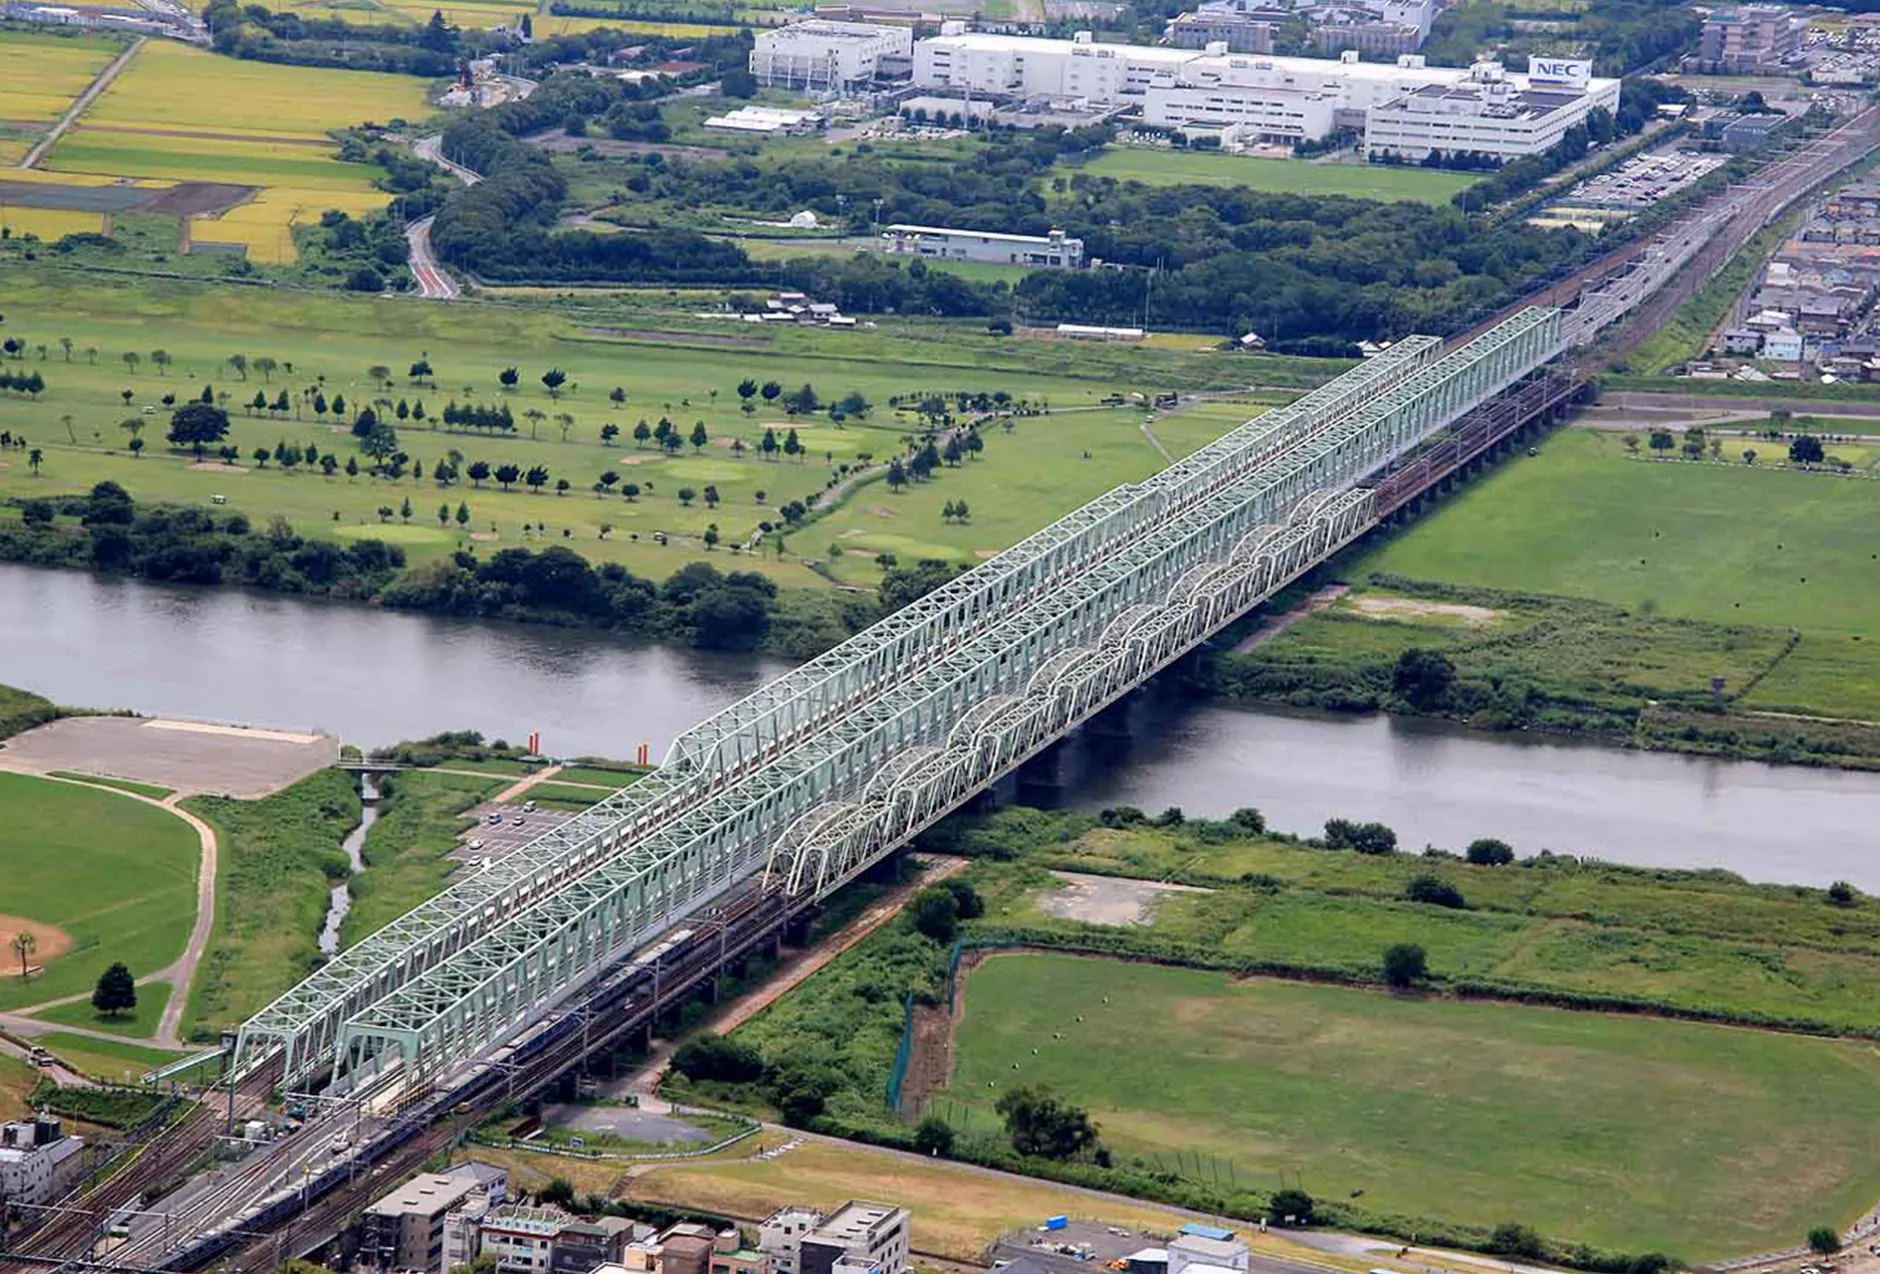 JR常磐線 天王台・取手間利根川橋梁改良工事のサムネイル画像です